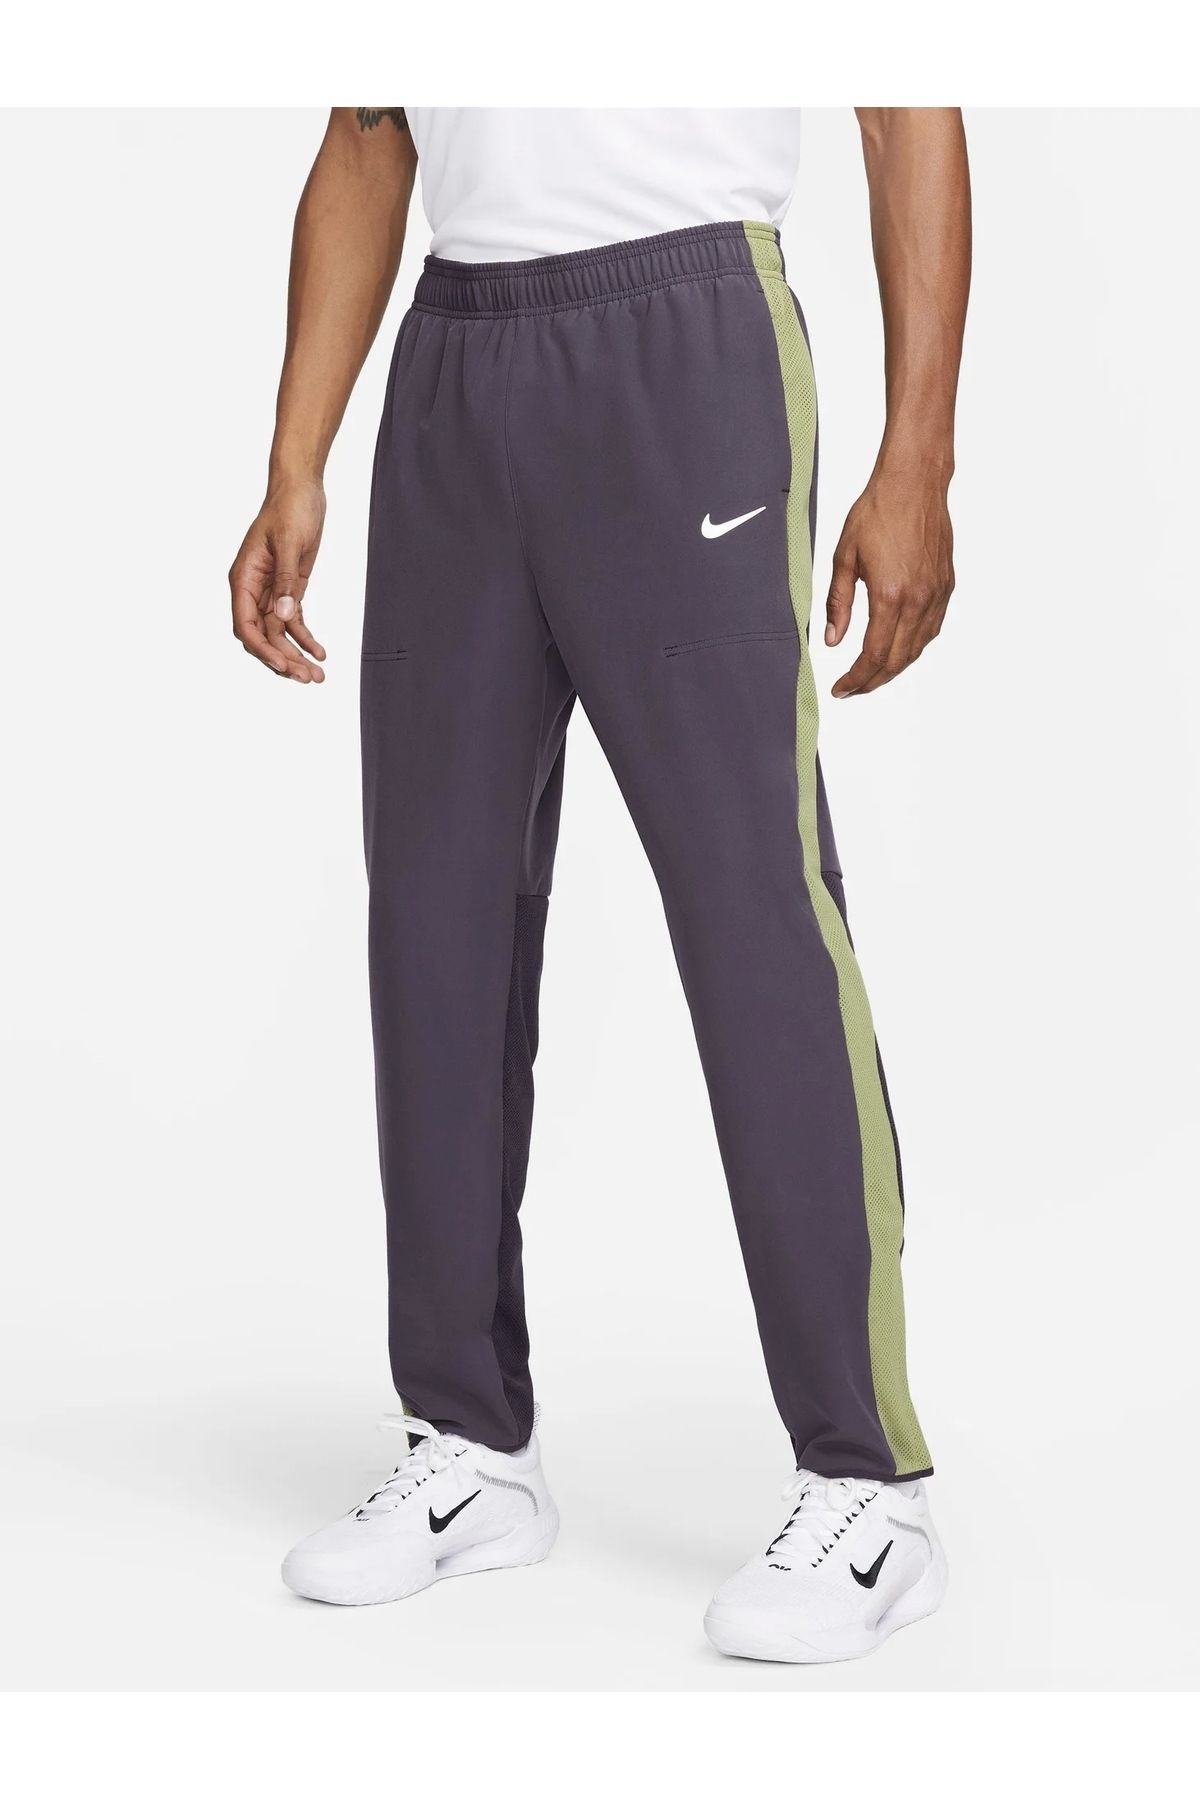 Nike NikeCourt Advantage Men's Tennis Pants